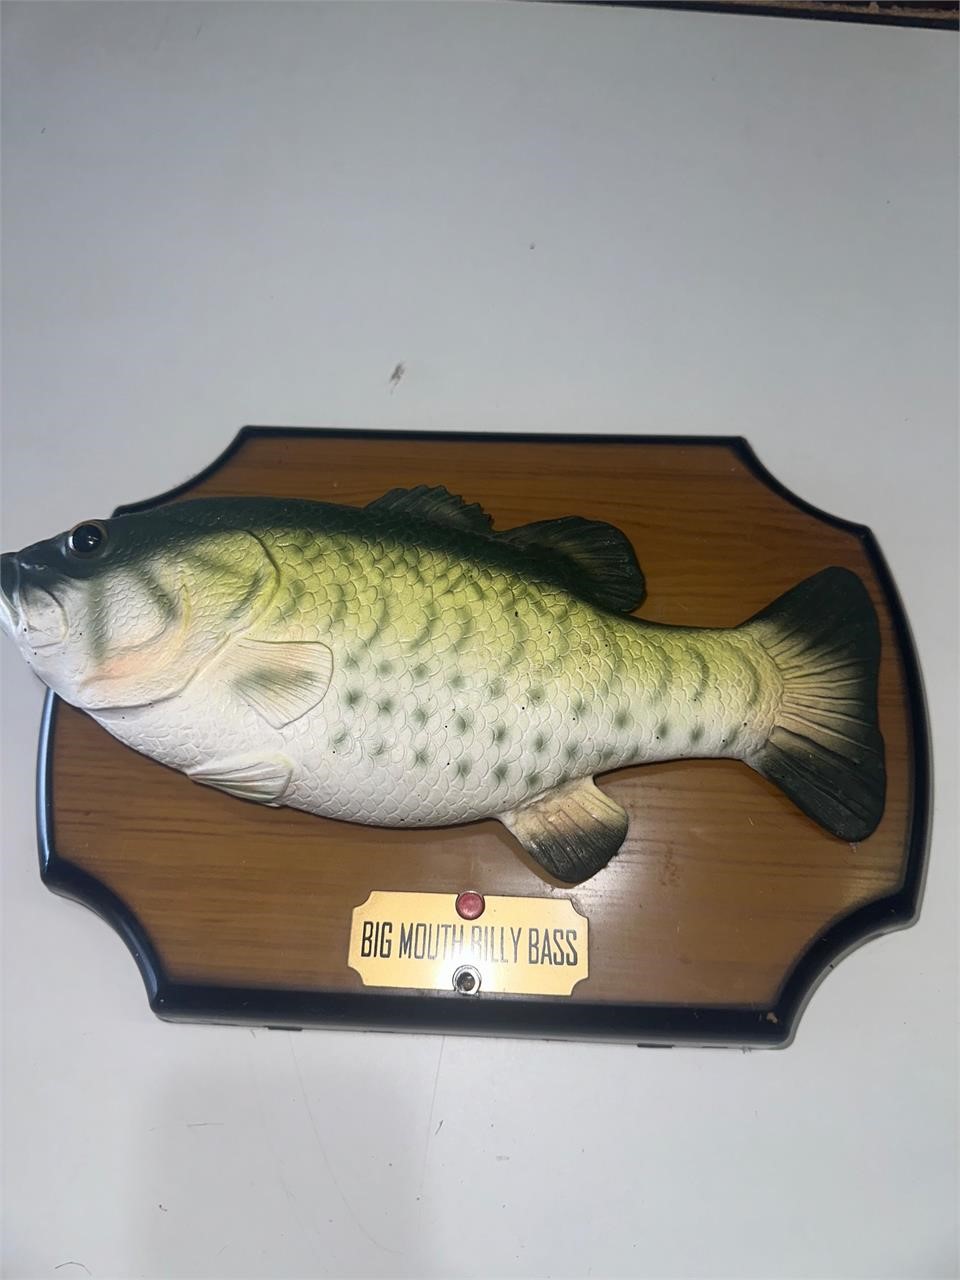 1999 Gemmy Billy Bass Big Mouth Singing Fish 3